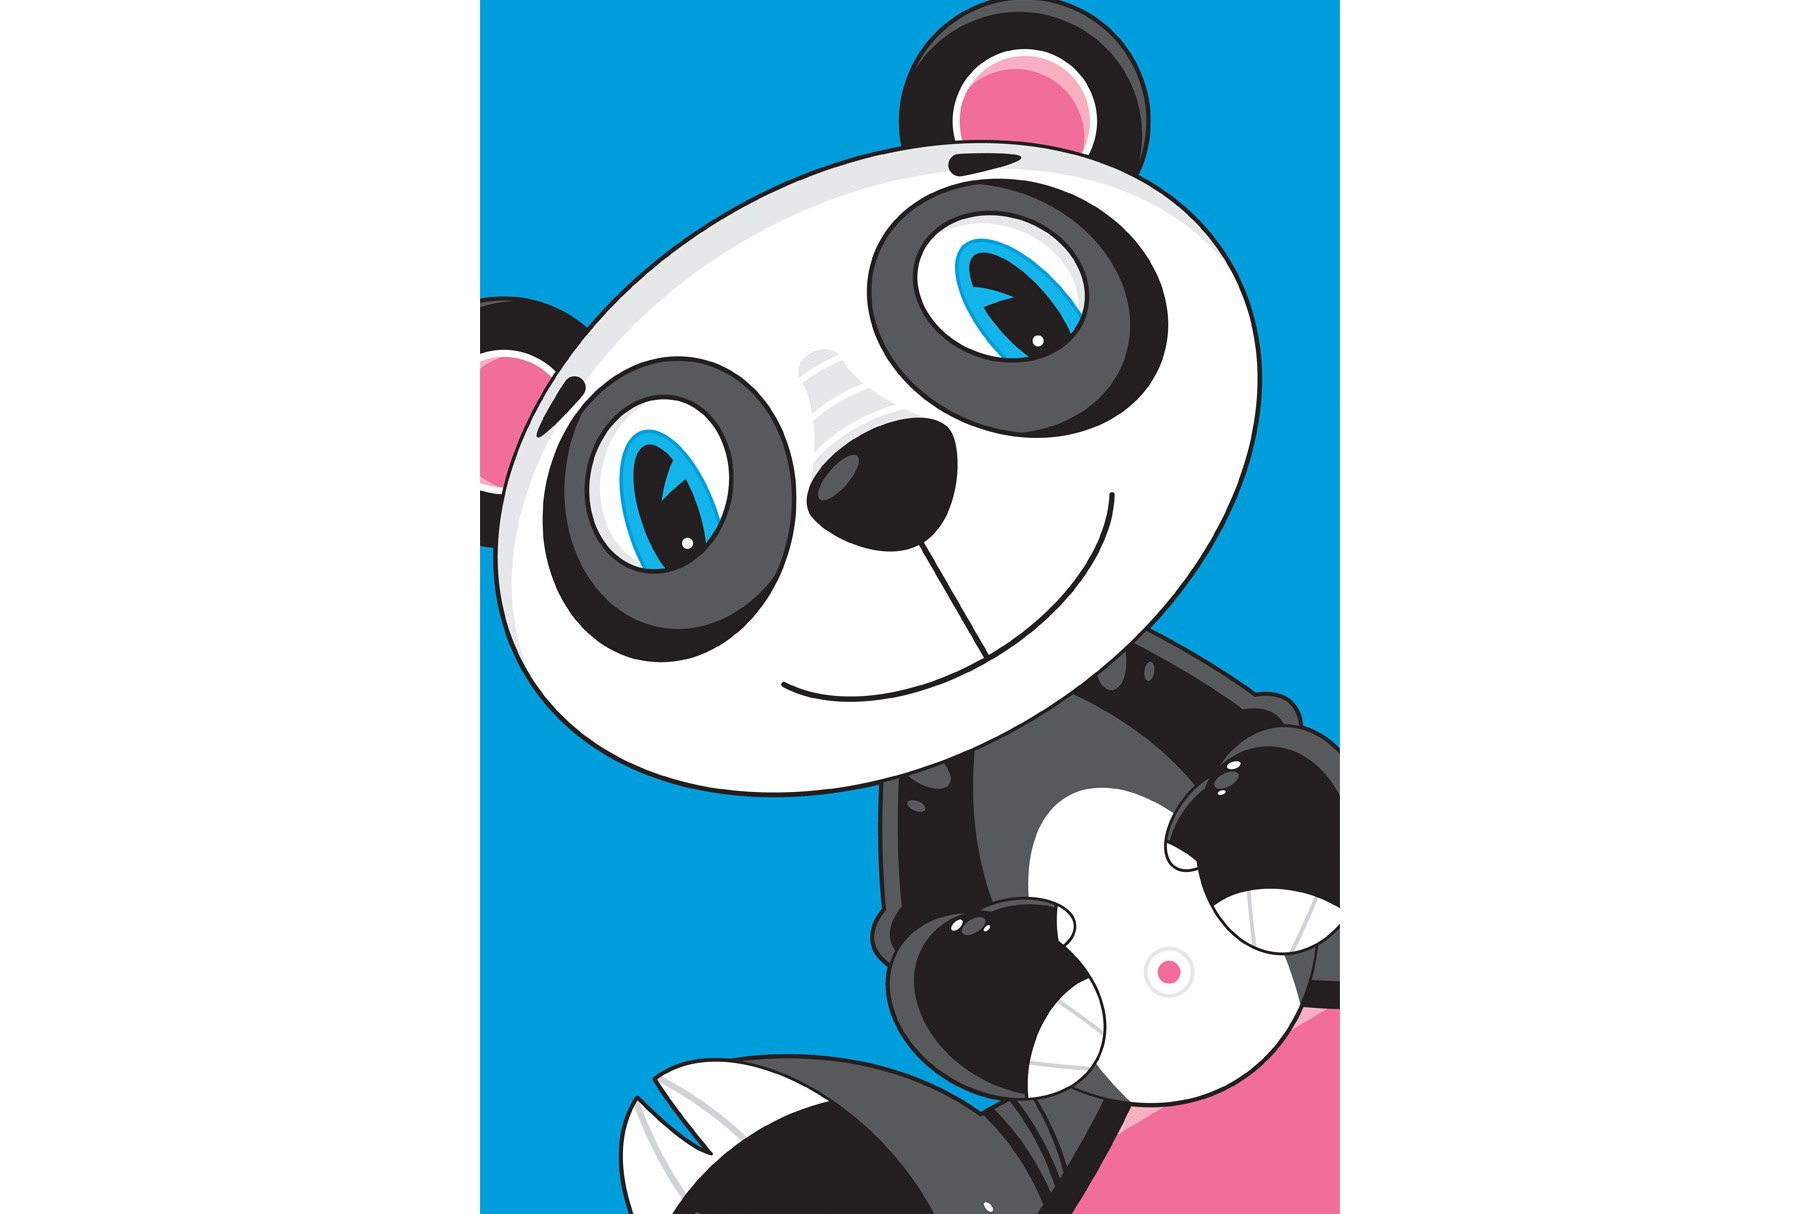 Cute Panda Bear cover image.